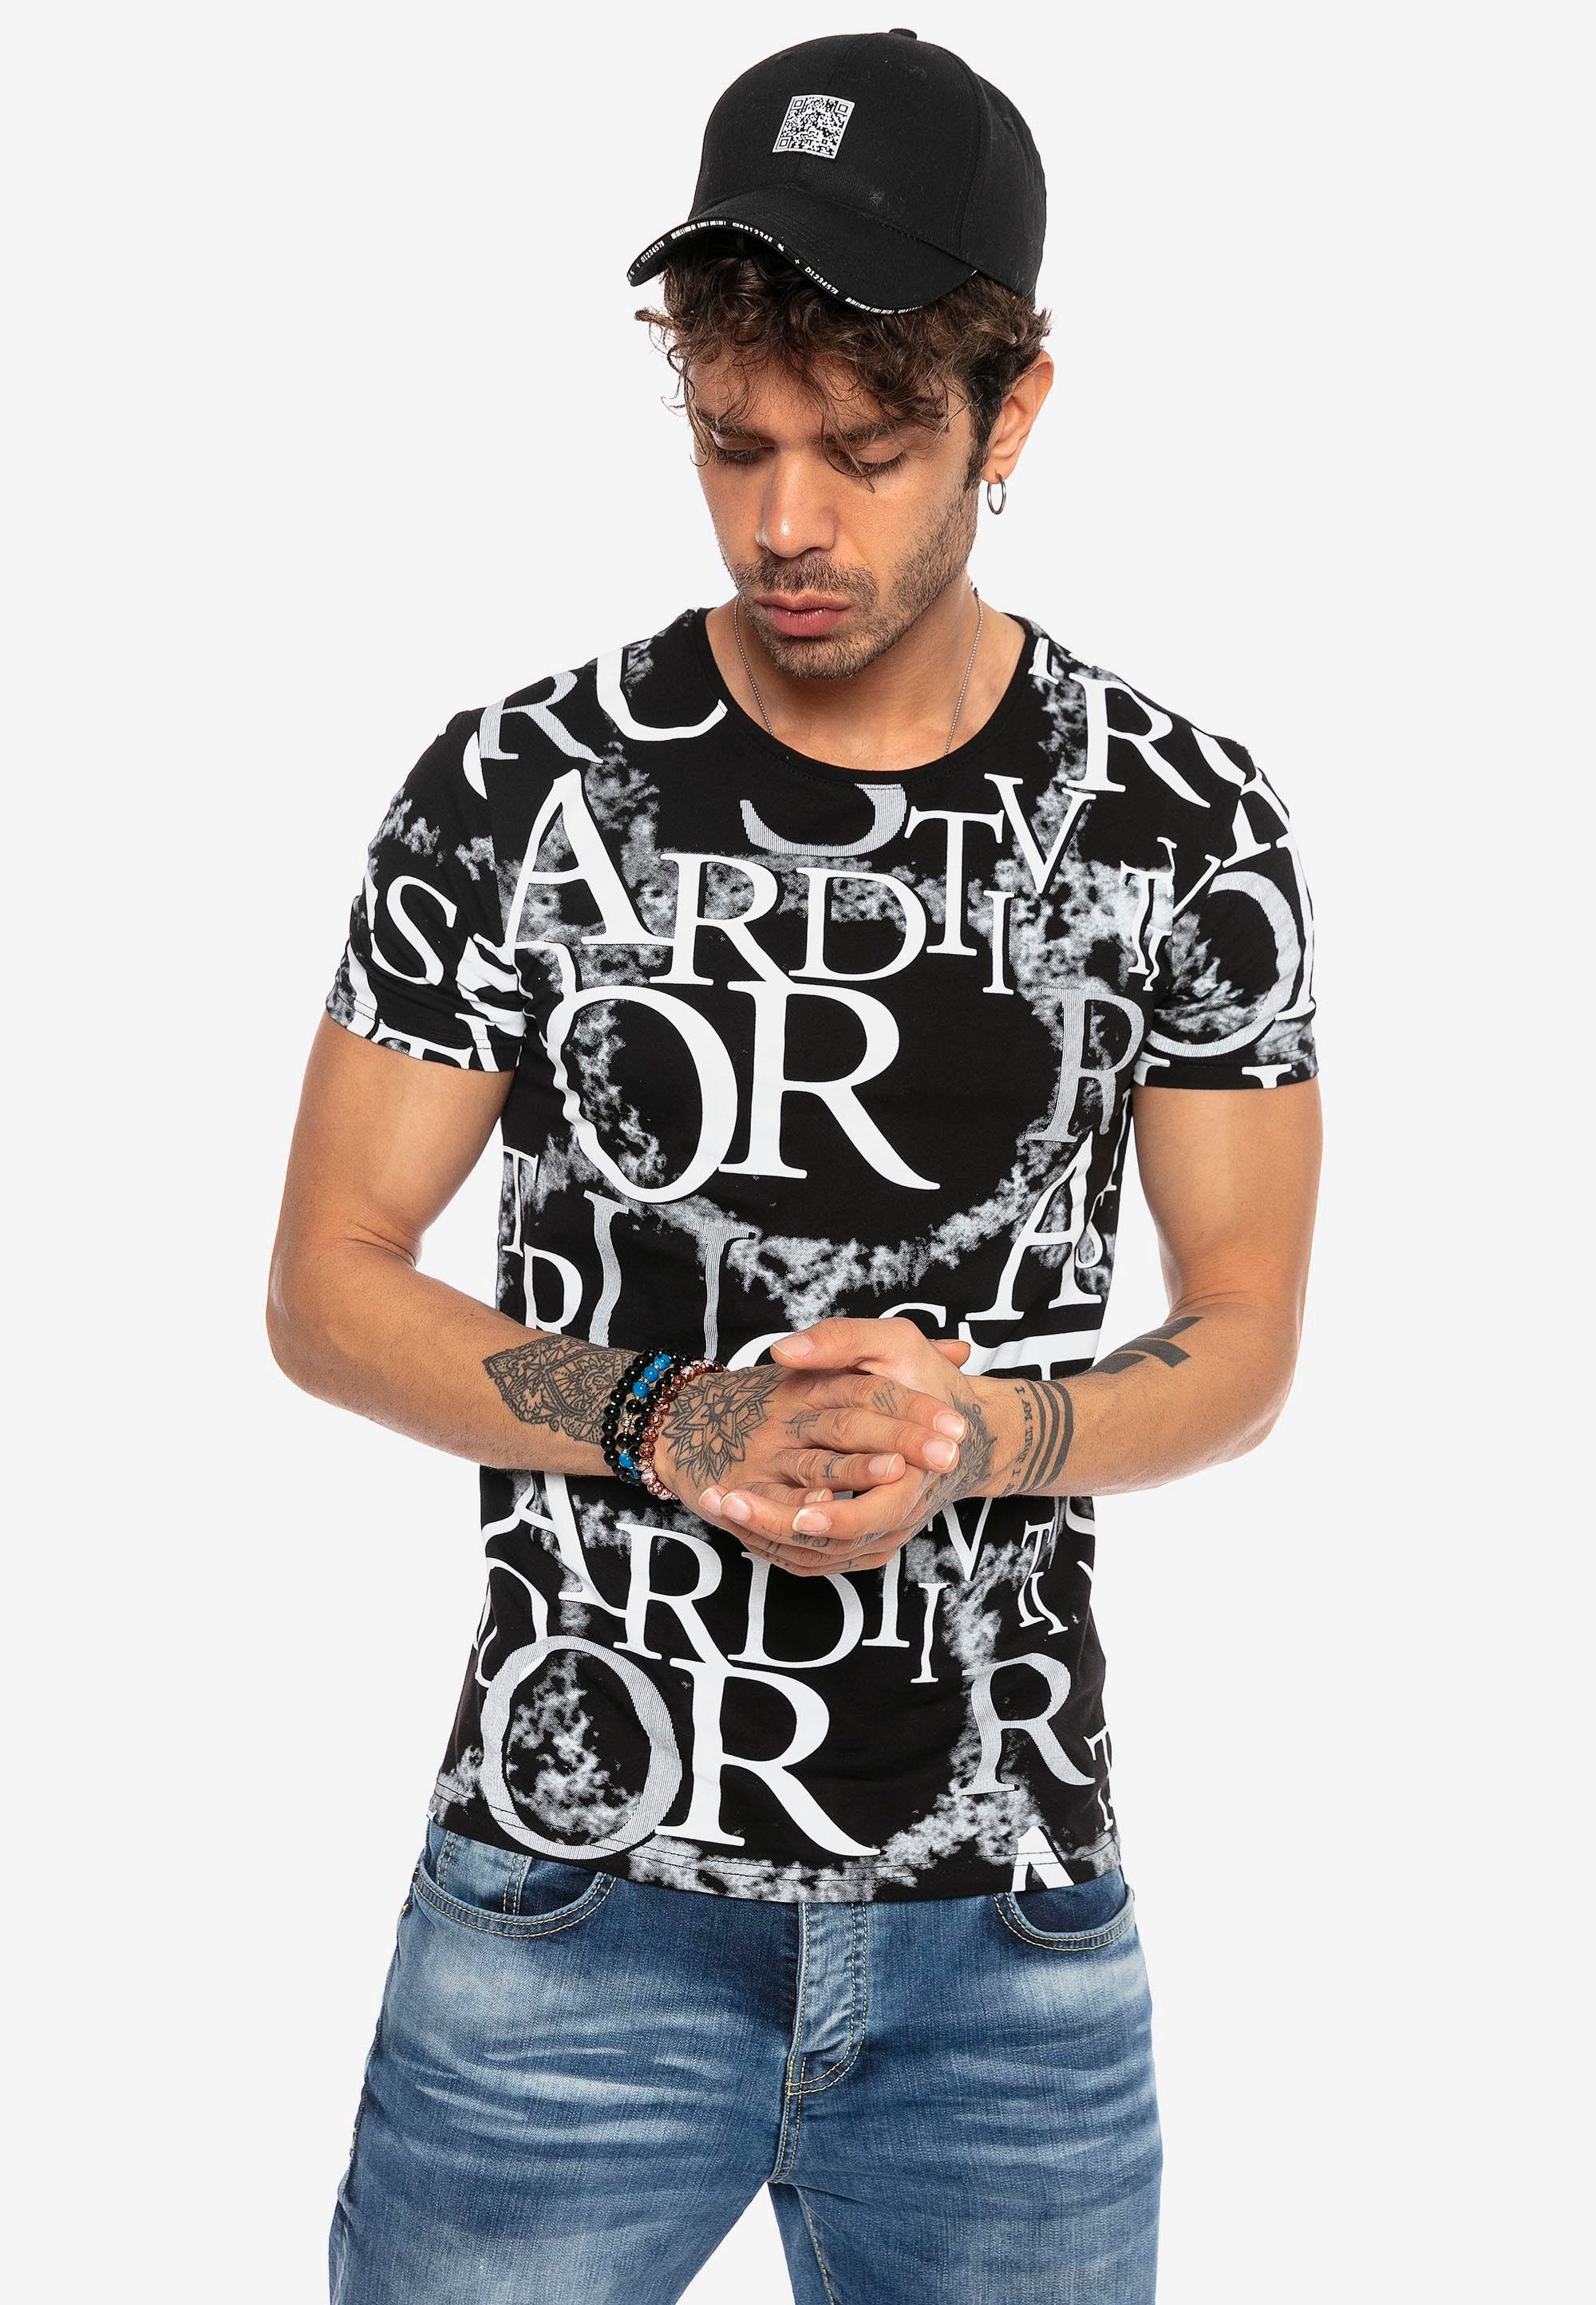 schwarz-weiß RedBridge mit ausgefallenem T-Shirt Allover-Print Heights Sterling